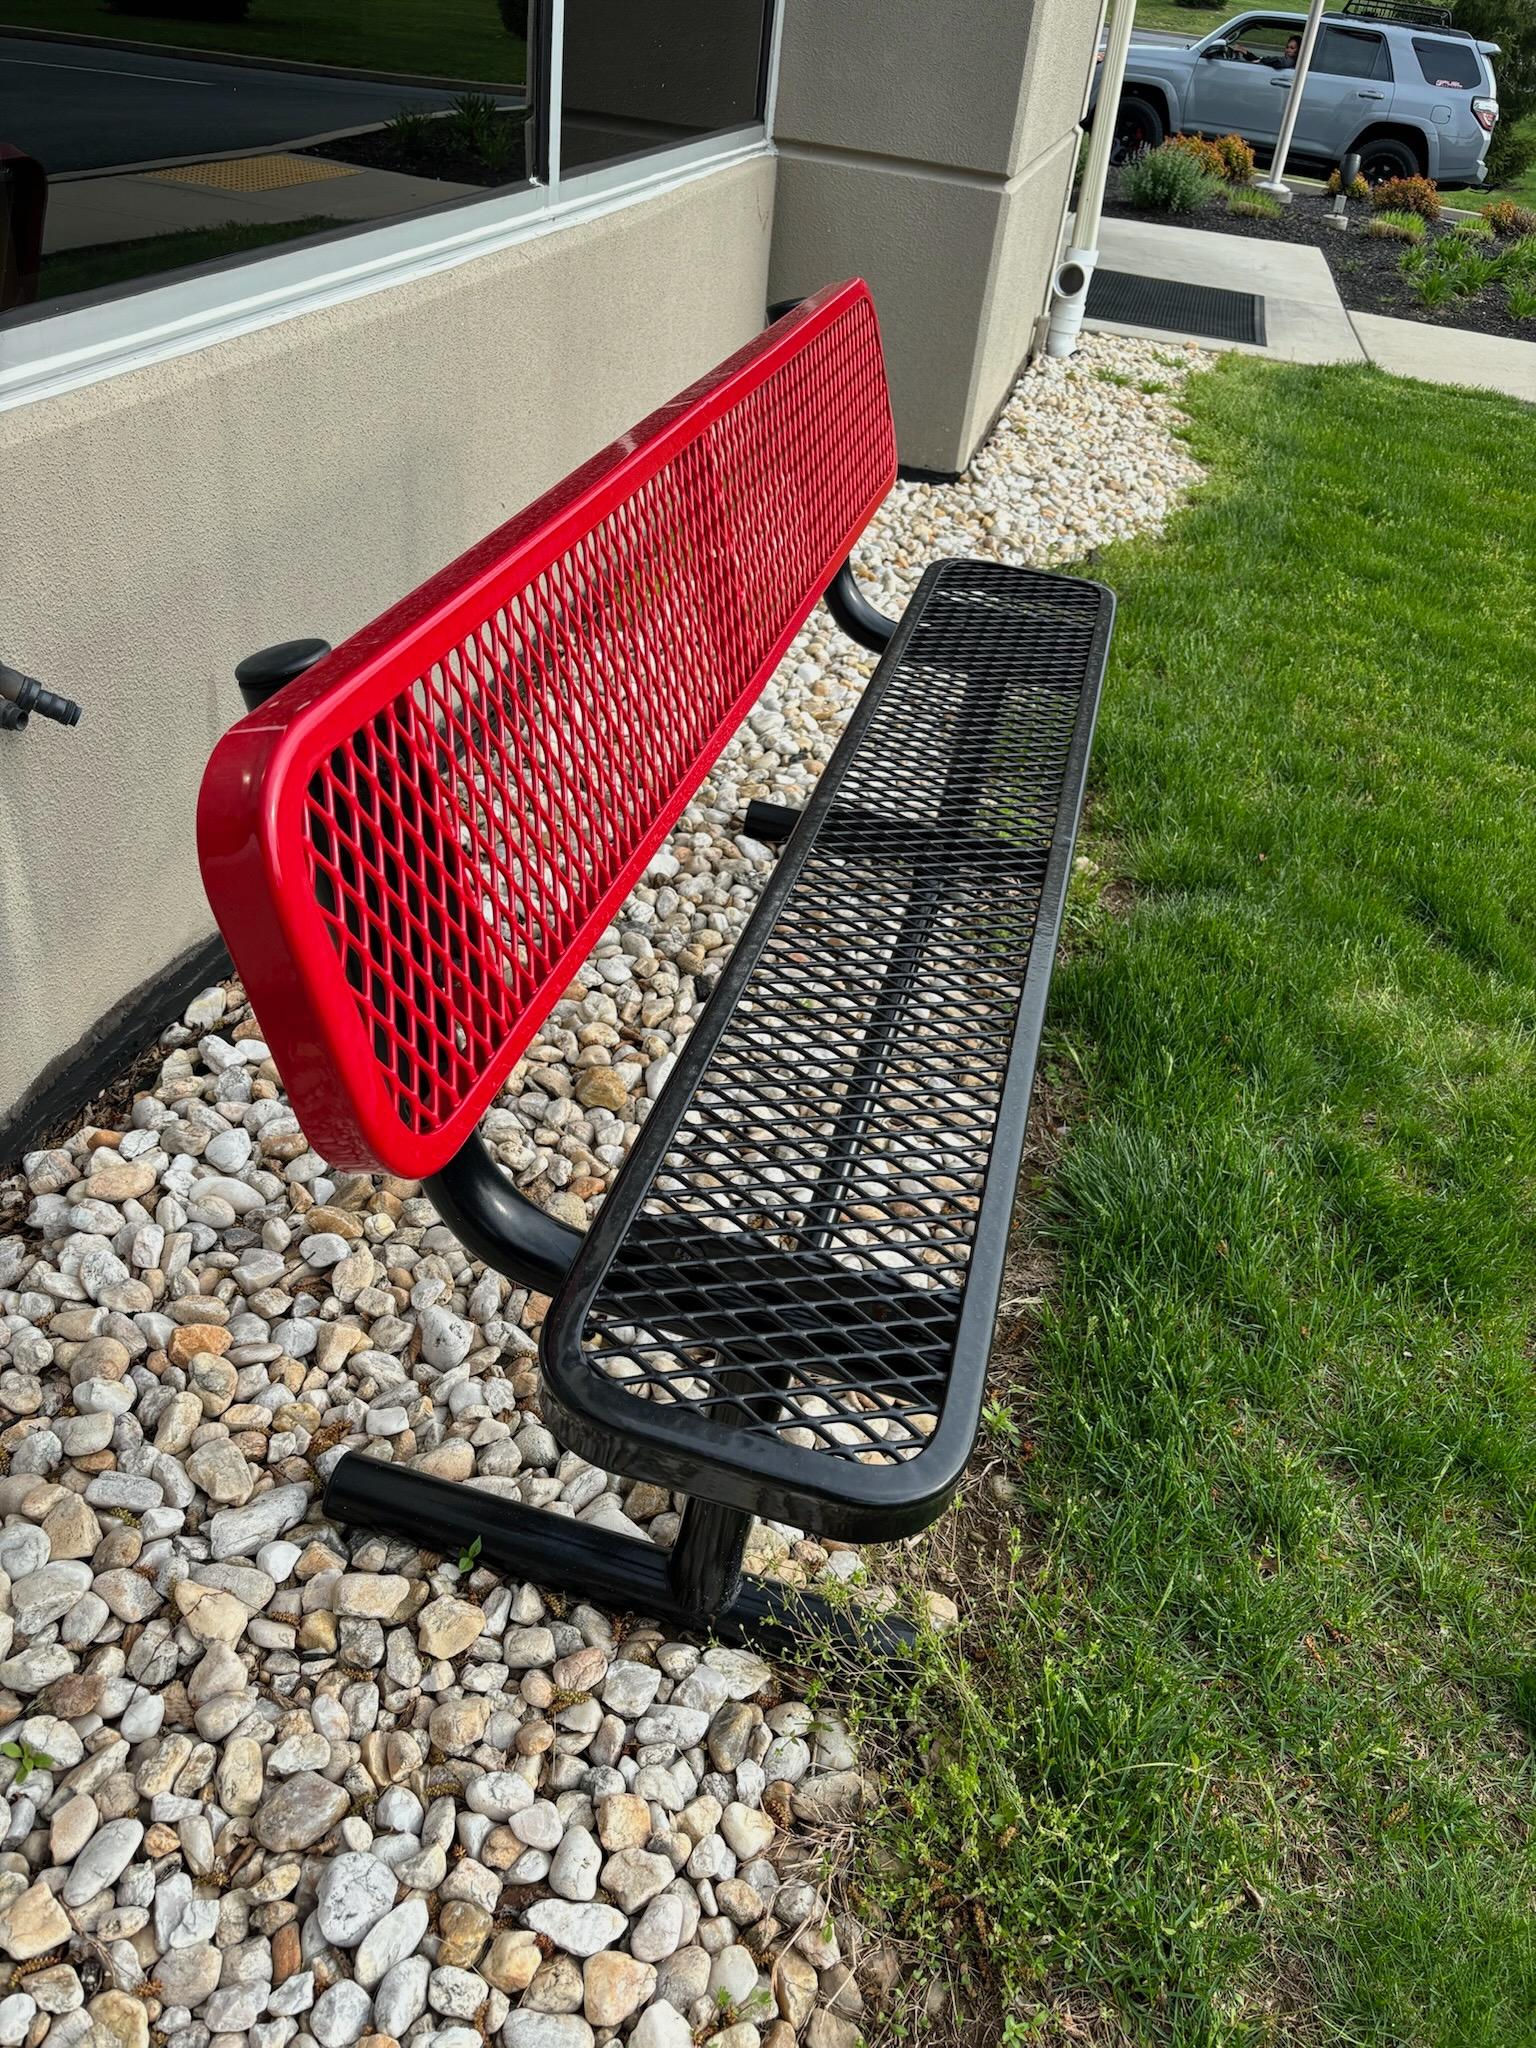 Outdoor Metal Bench